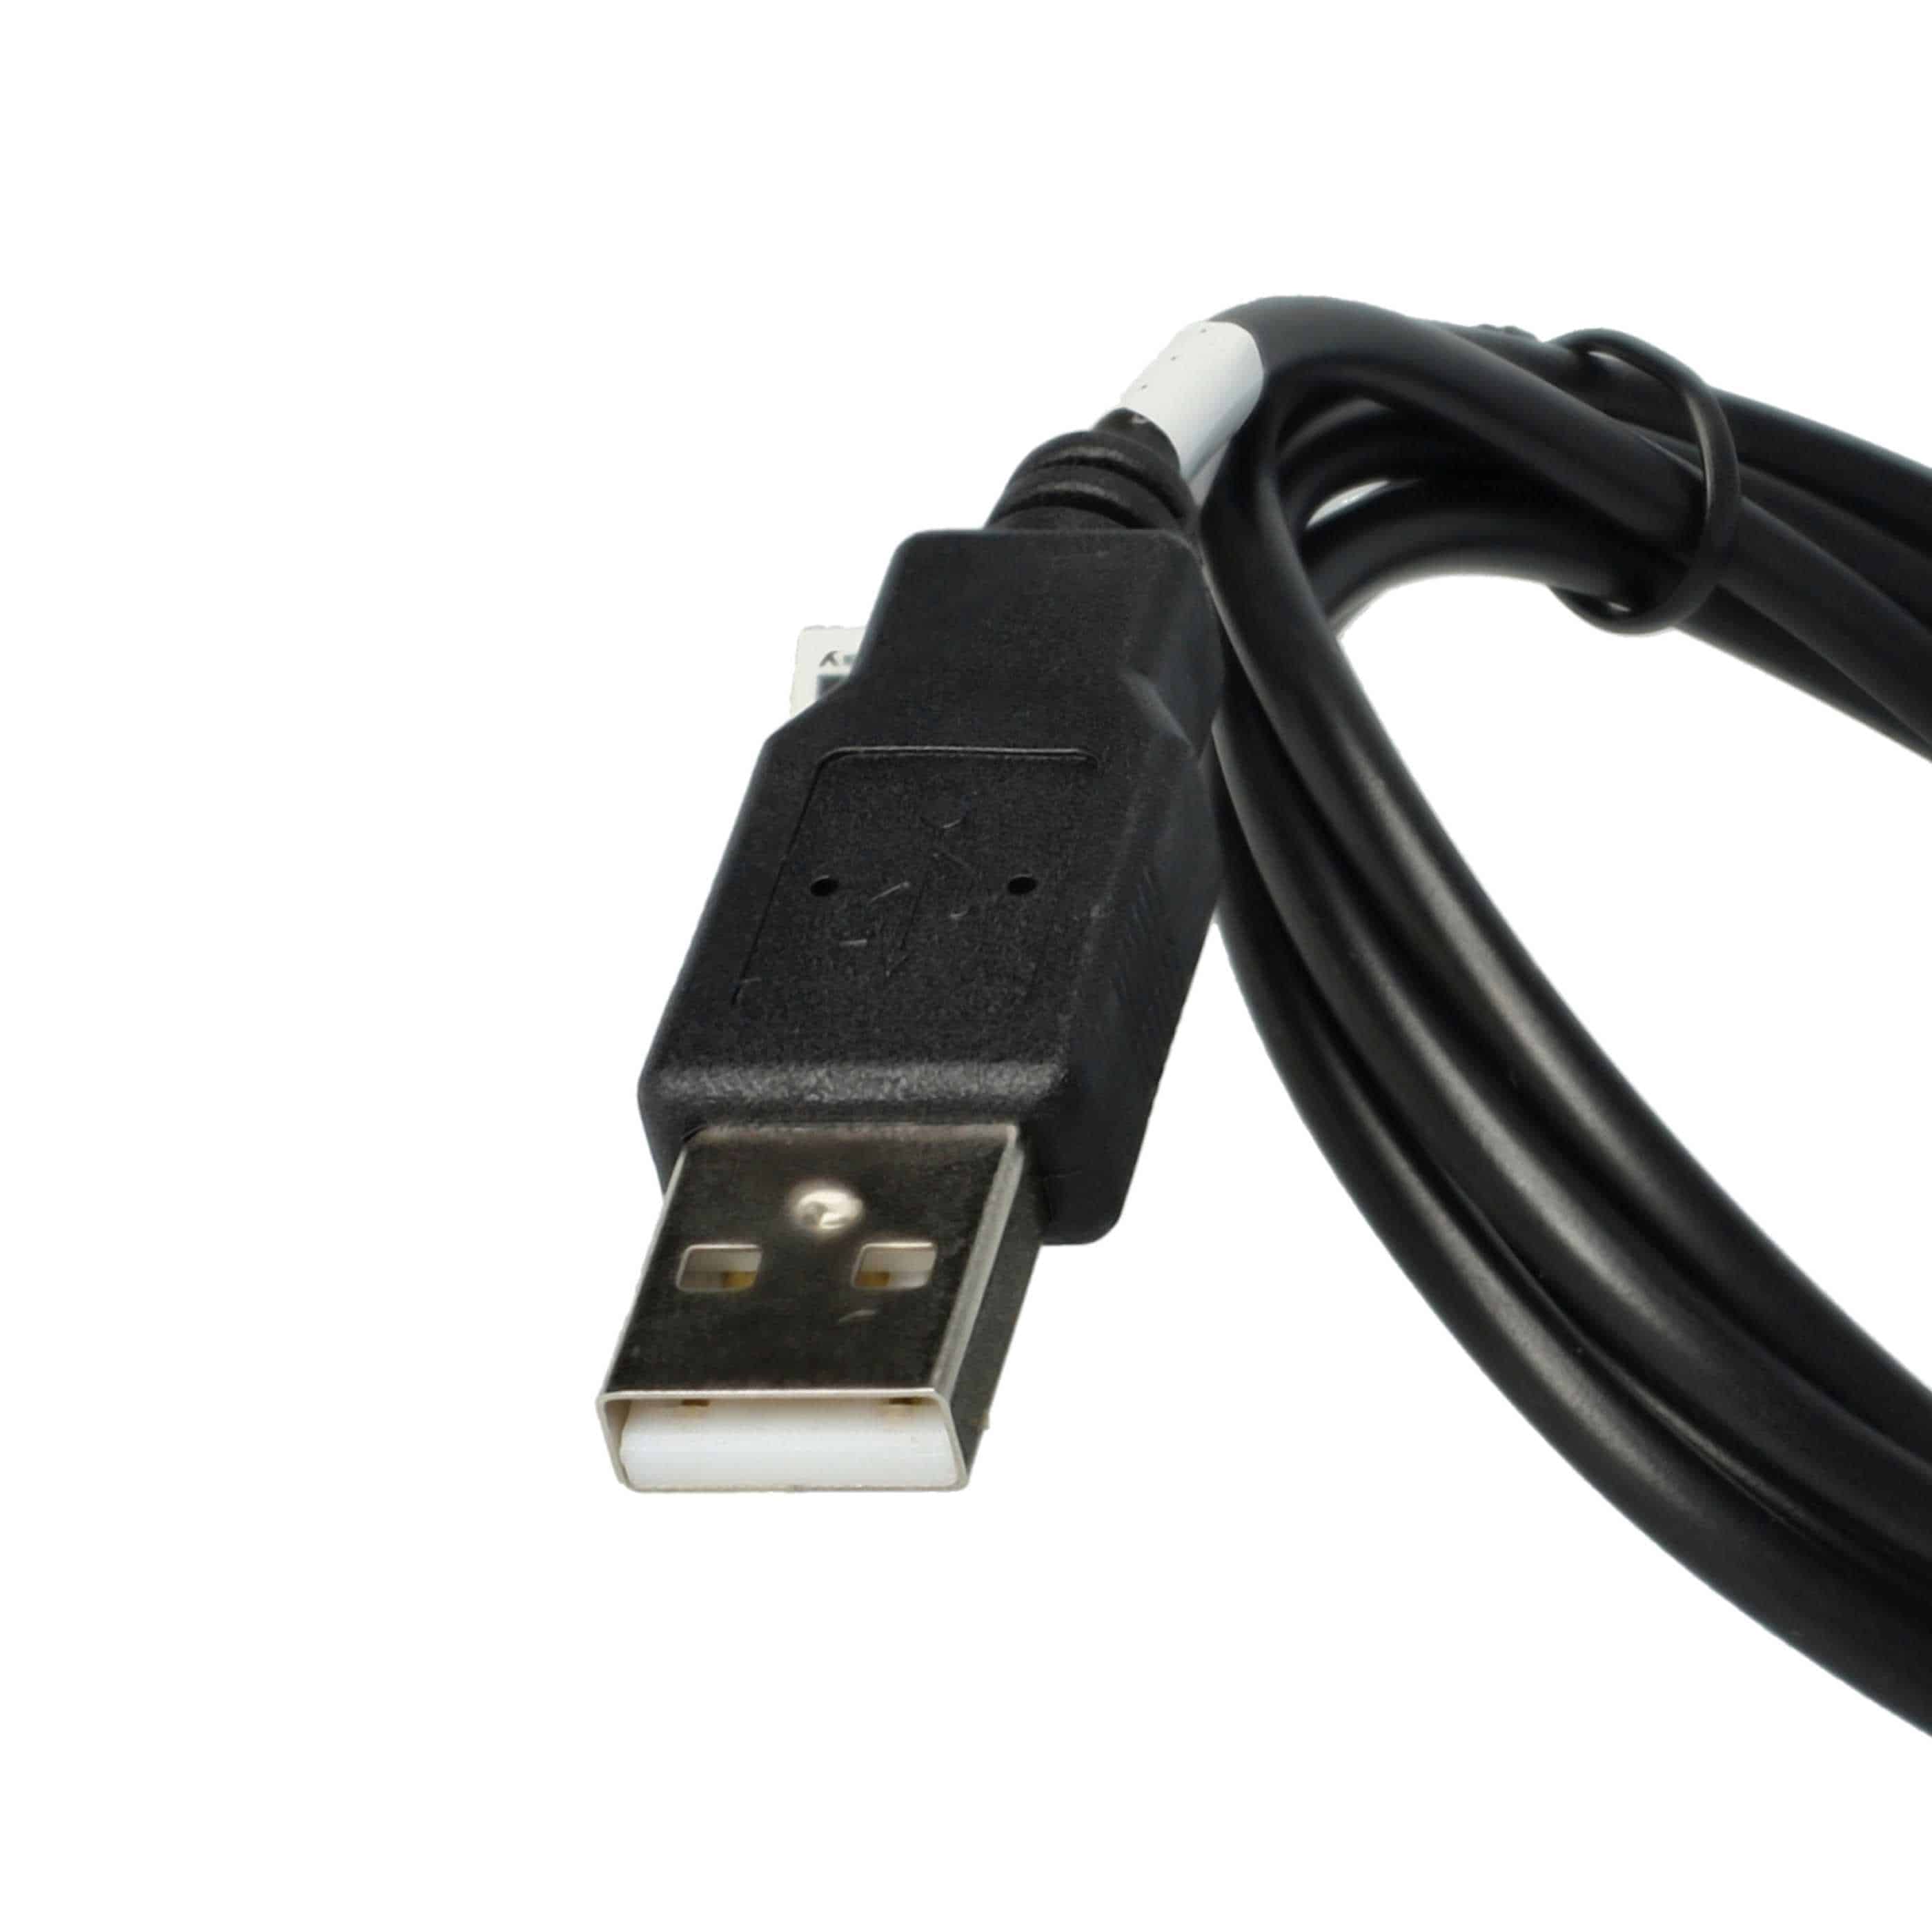 Kabel USB do transmisji danych do komórki Nokia E51 - kabel ładujący 2w1 - 100 cm